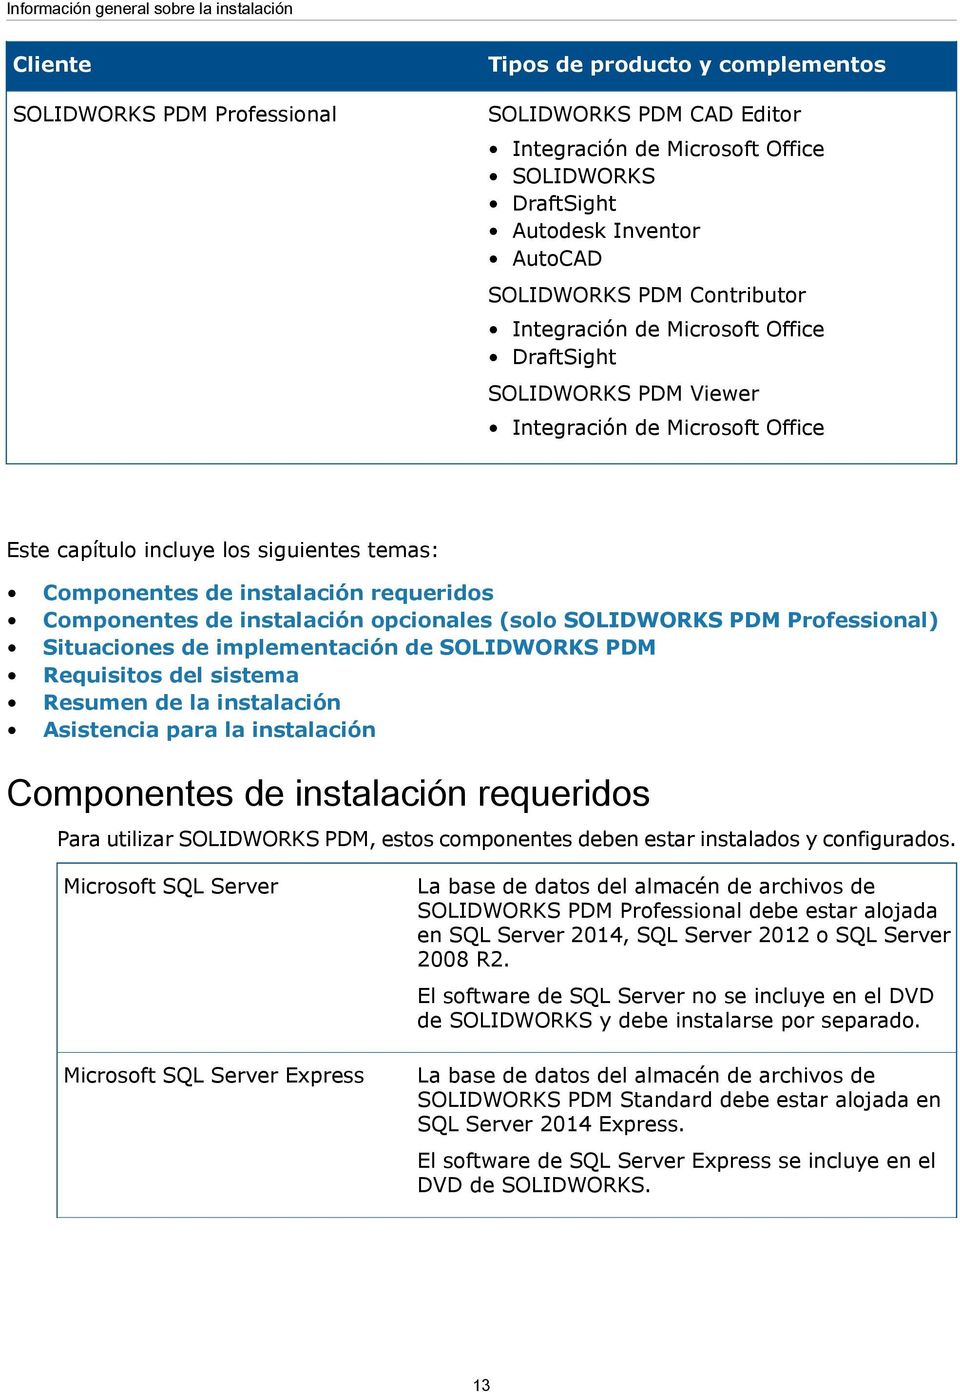 instalación requeridos Componentes de instalación opcionales (solo SOLIDWORKS PDM Professional) Situaciones de implementación de SOLIDWORKS PDM Requisitos del sistema Resumen de la instalación